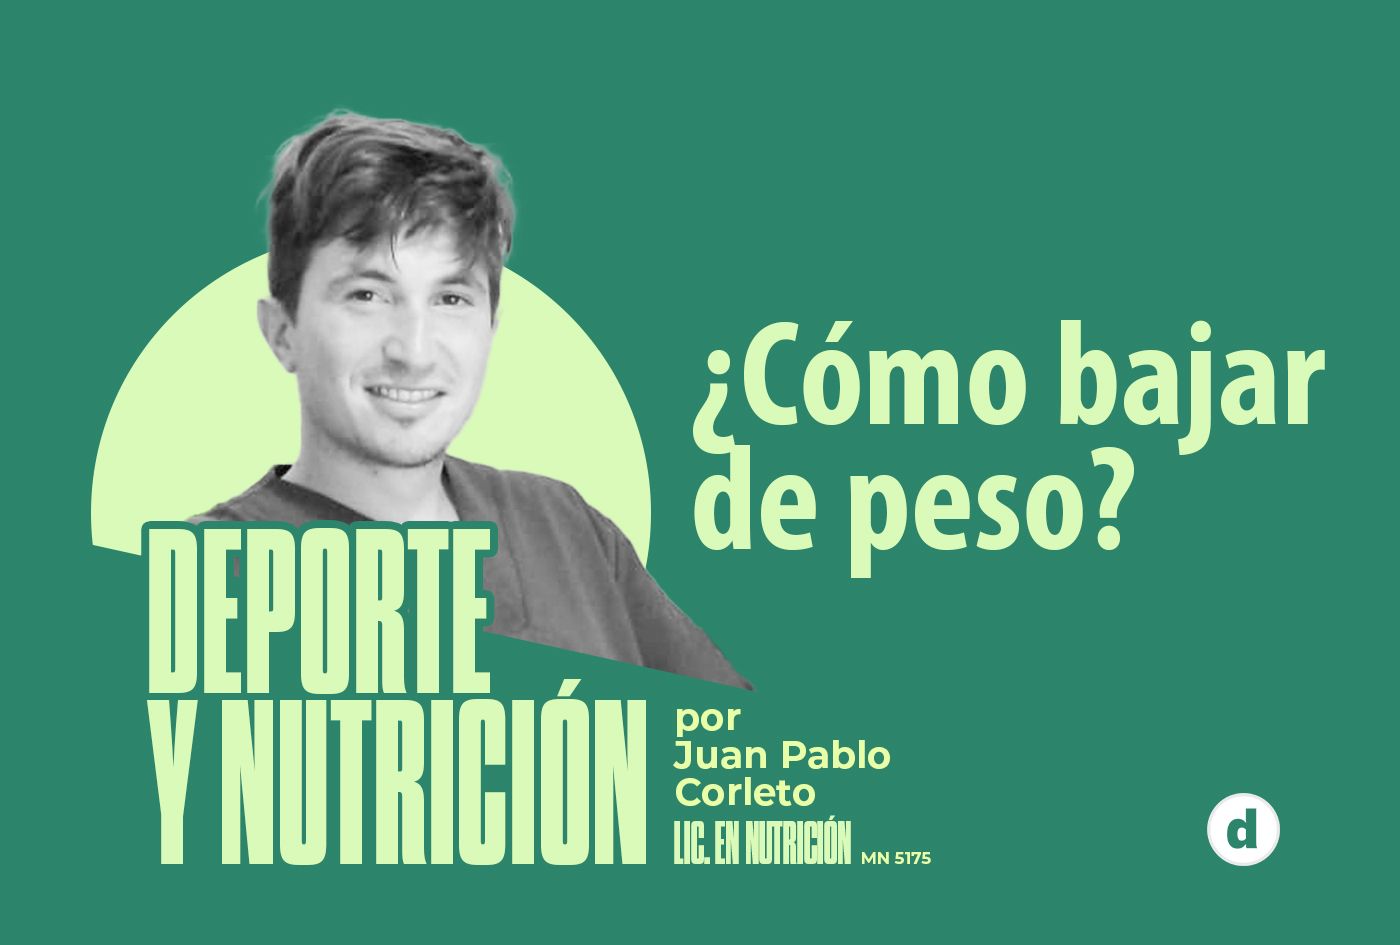 La columna del nutricionista Juan Pablo Corleto: ¿Cómo bajar de peso?